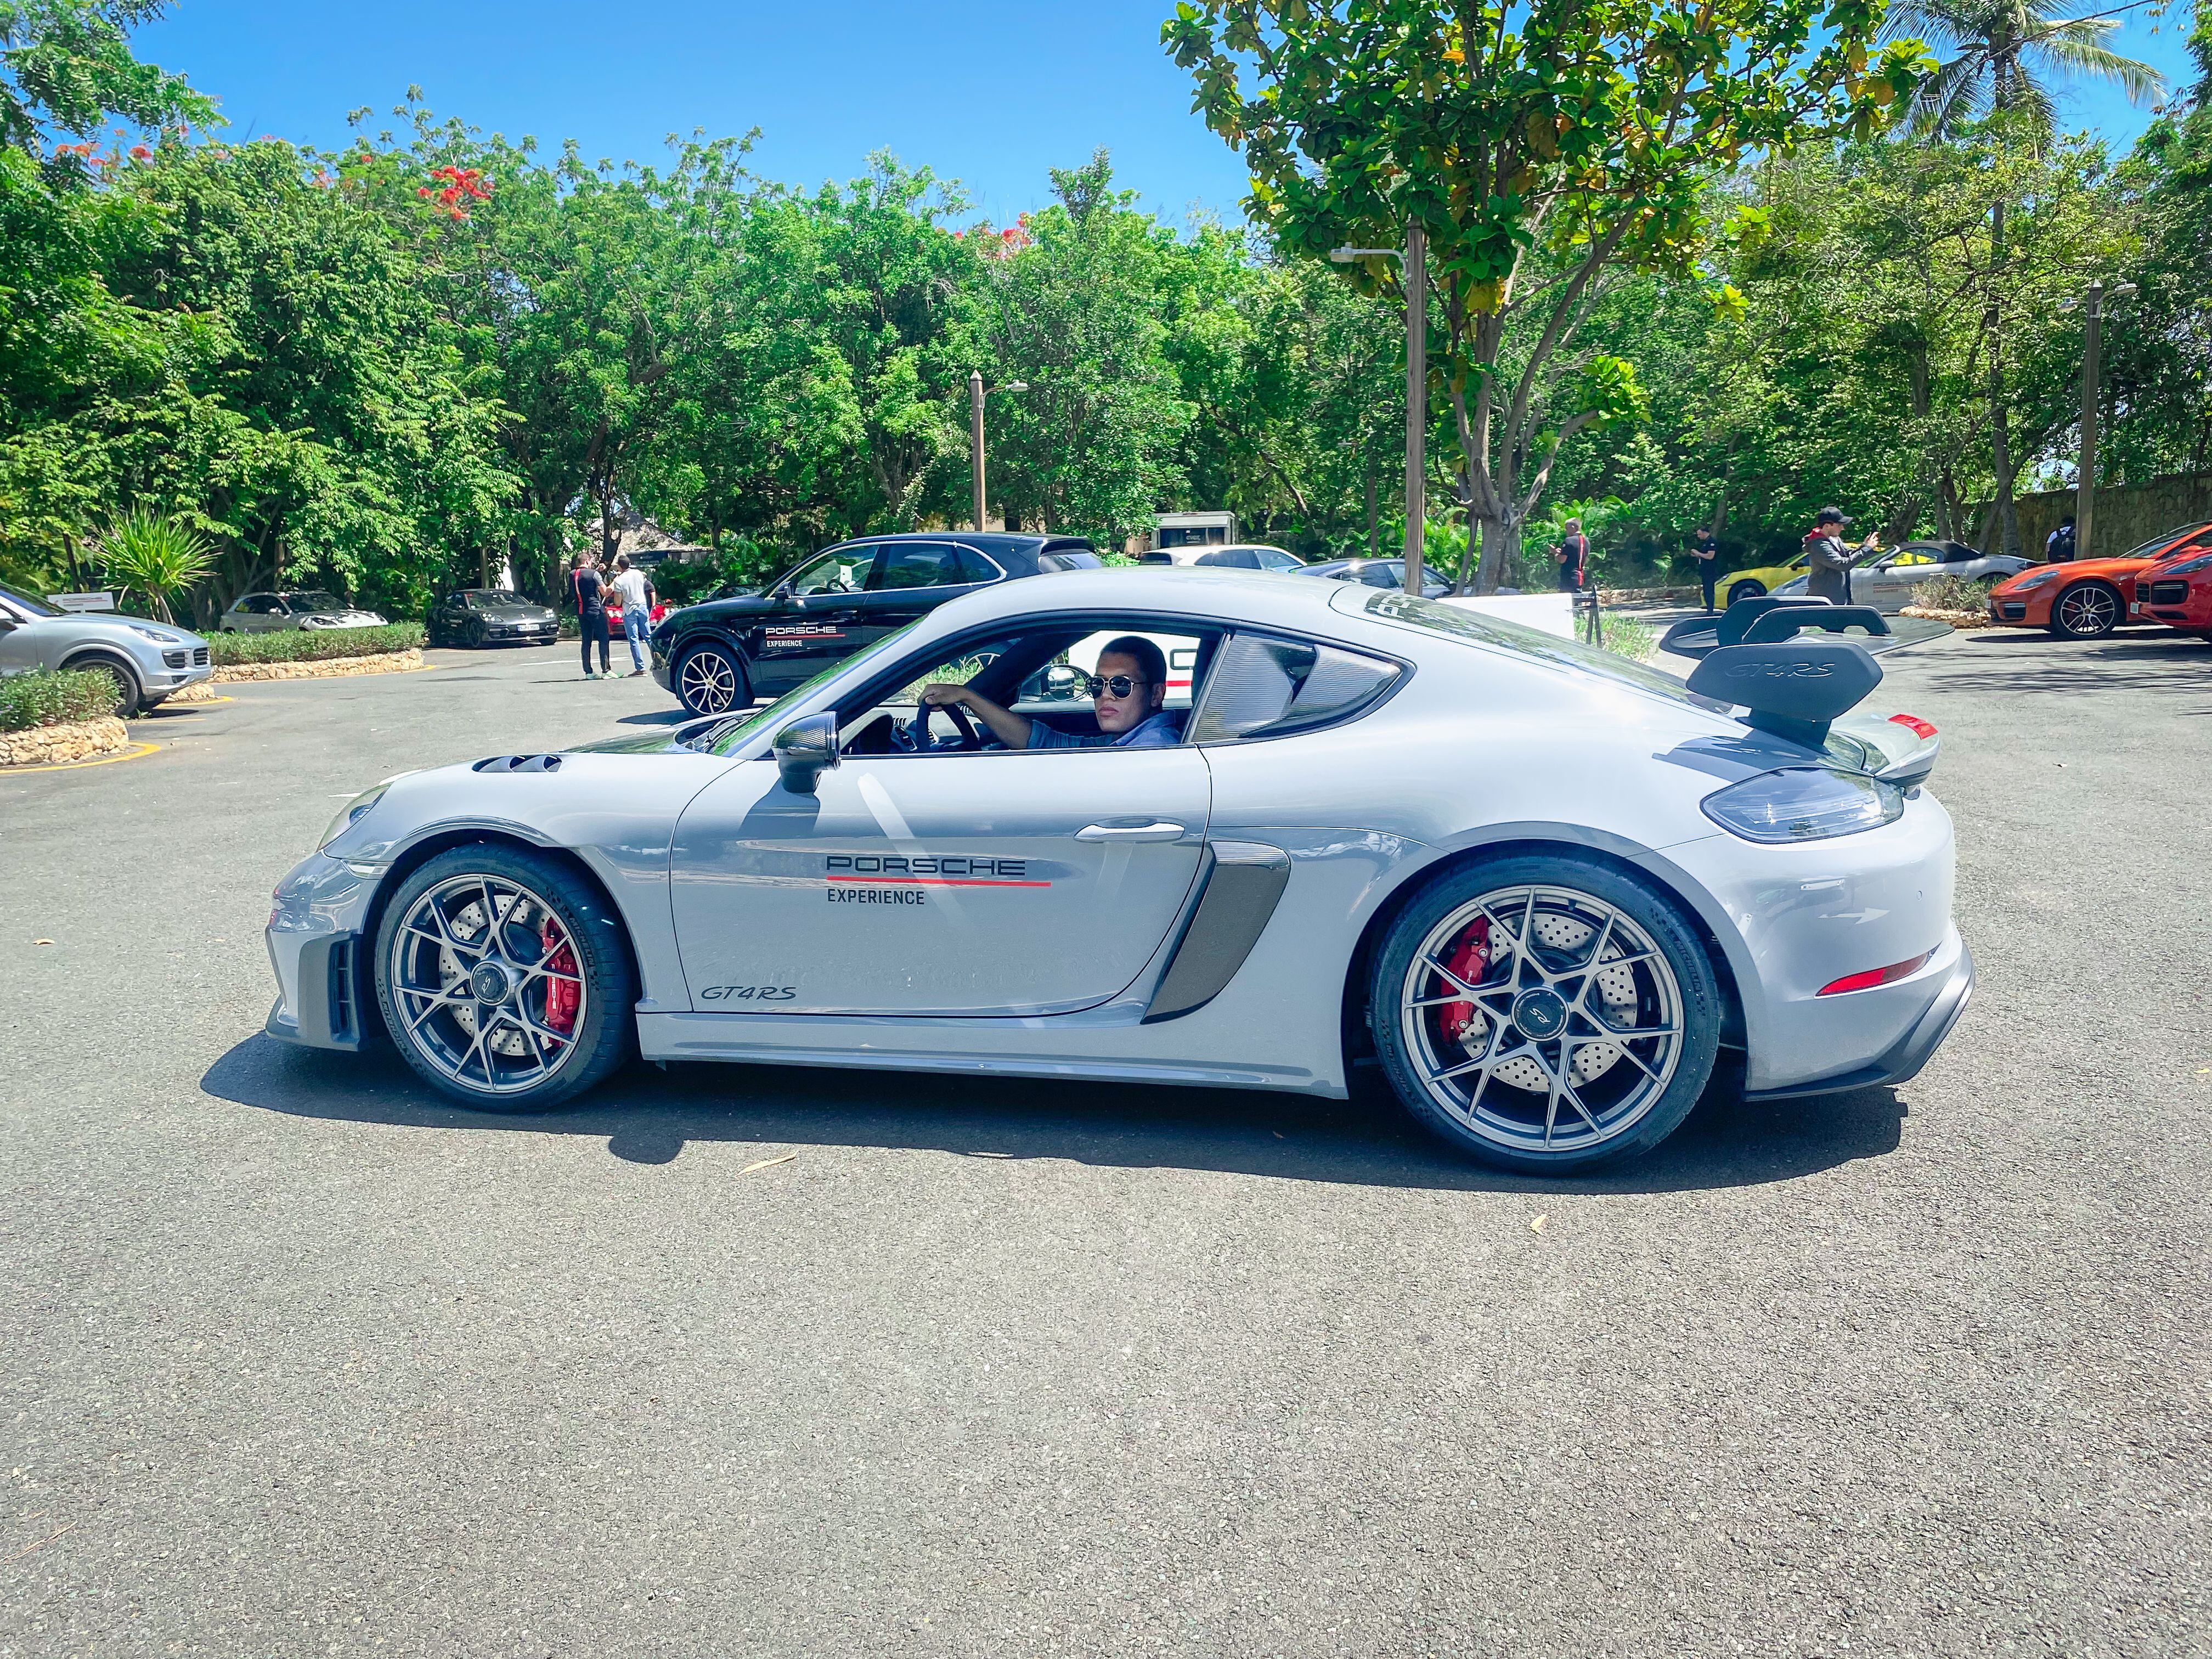 Prueba de conducción del Porsche 718 Cayman GT4 RS en República Dominicana.